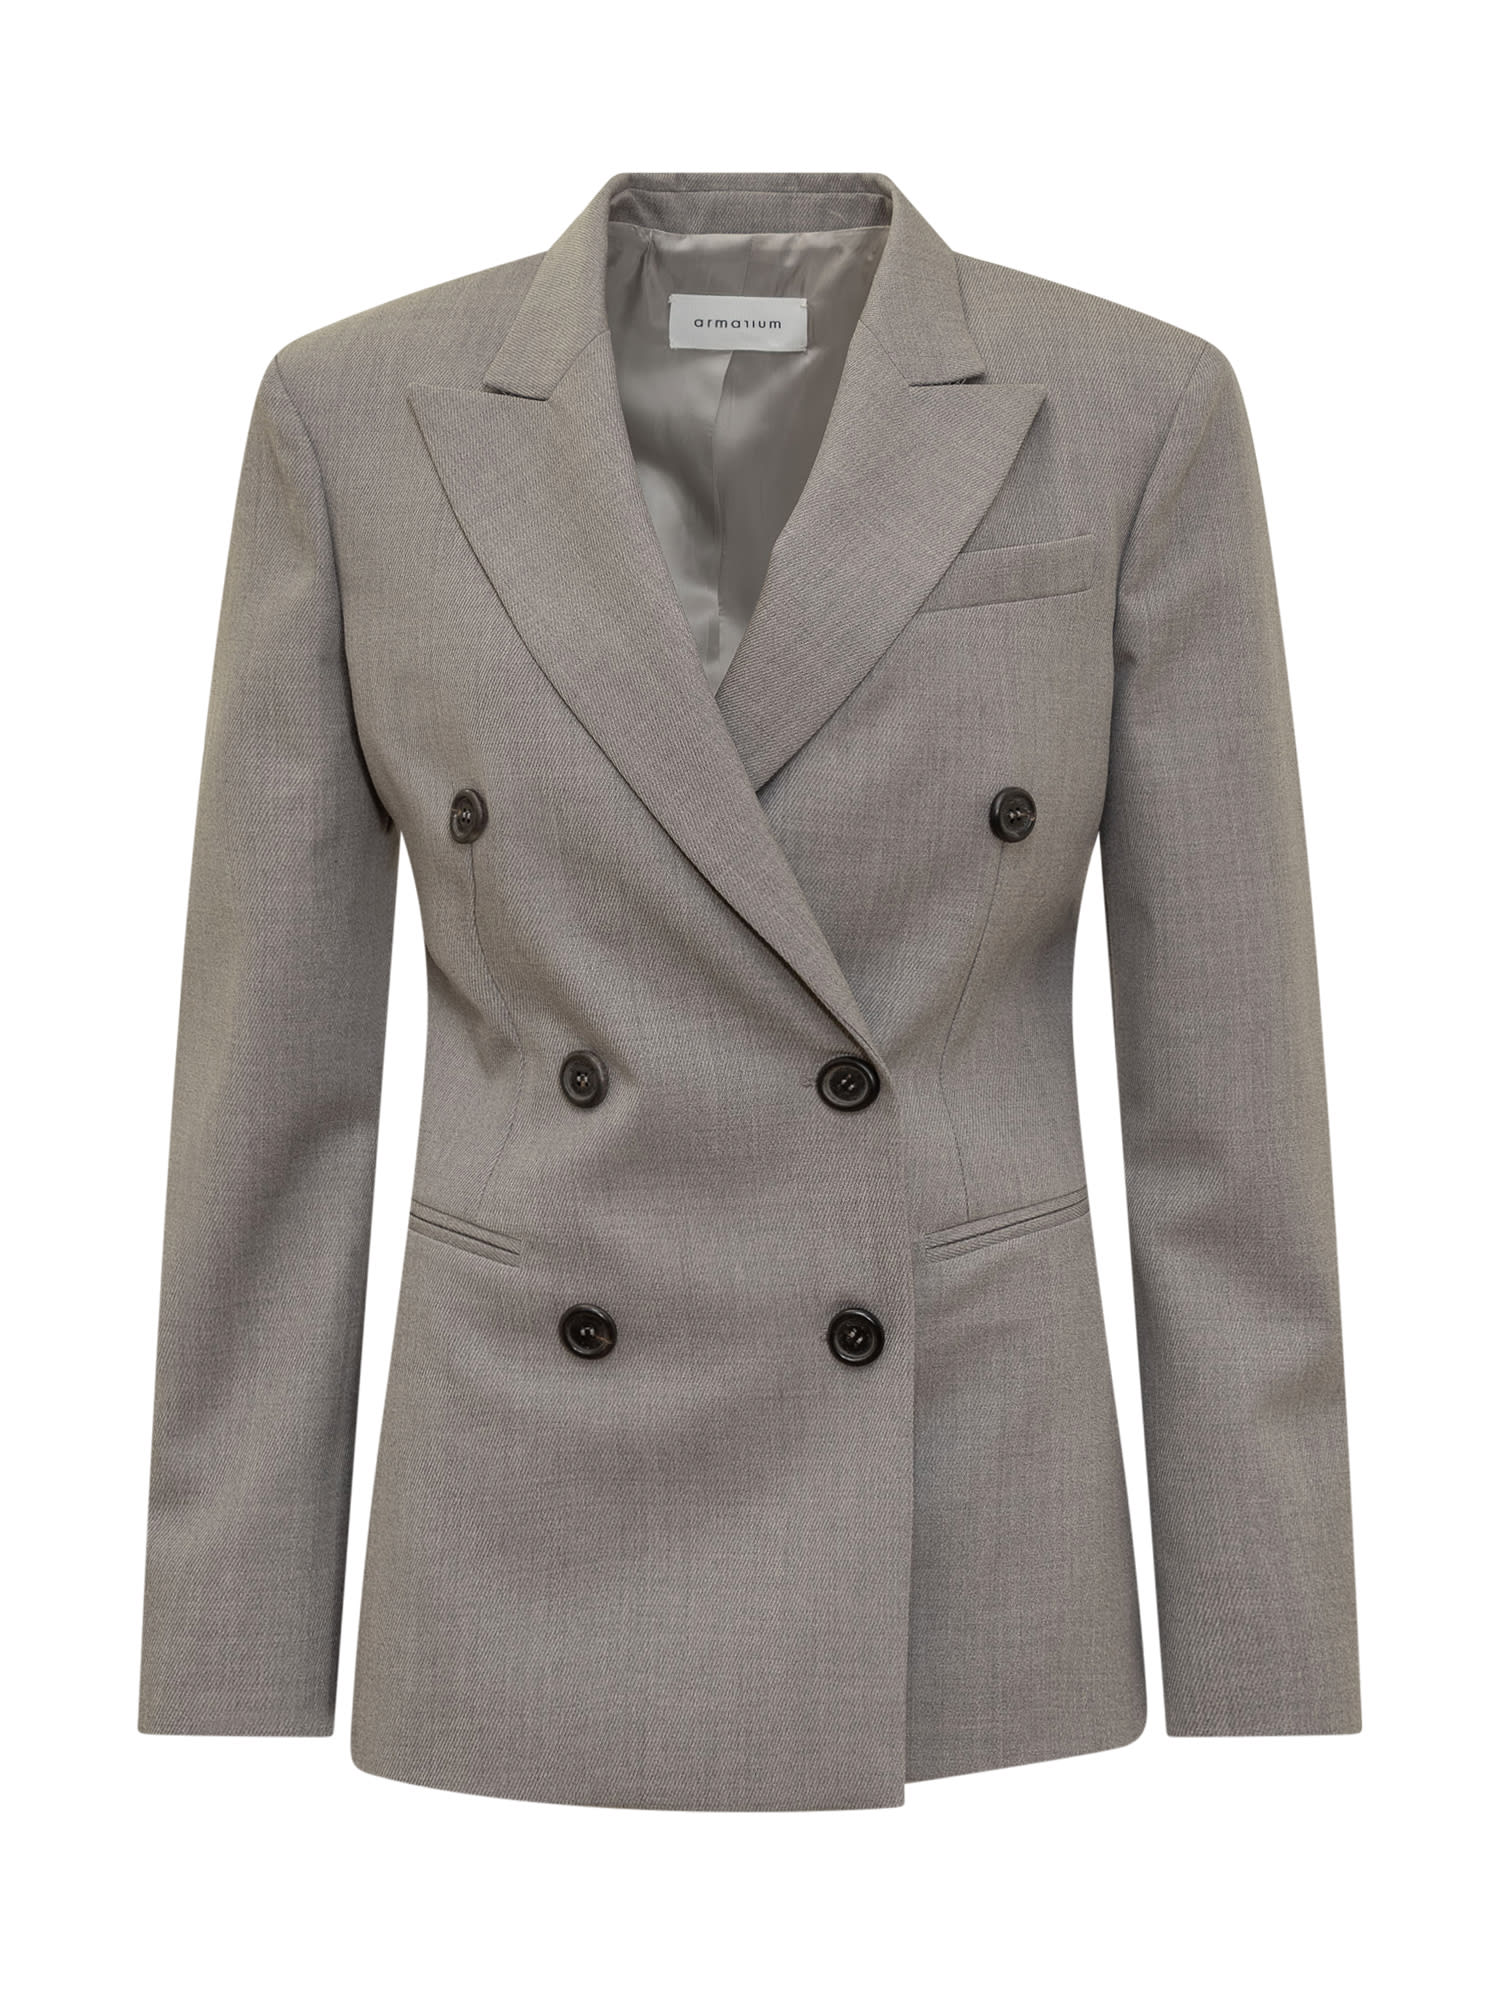 Shop Armarium Myra Jacket In Grey